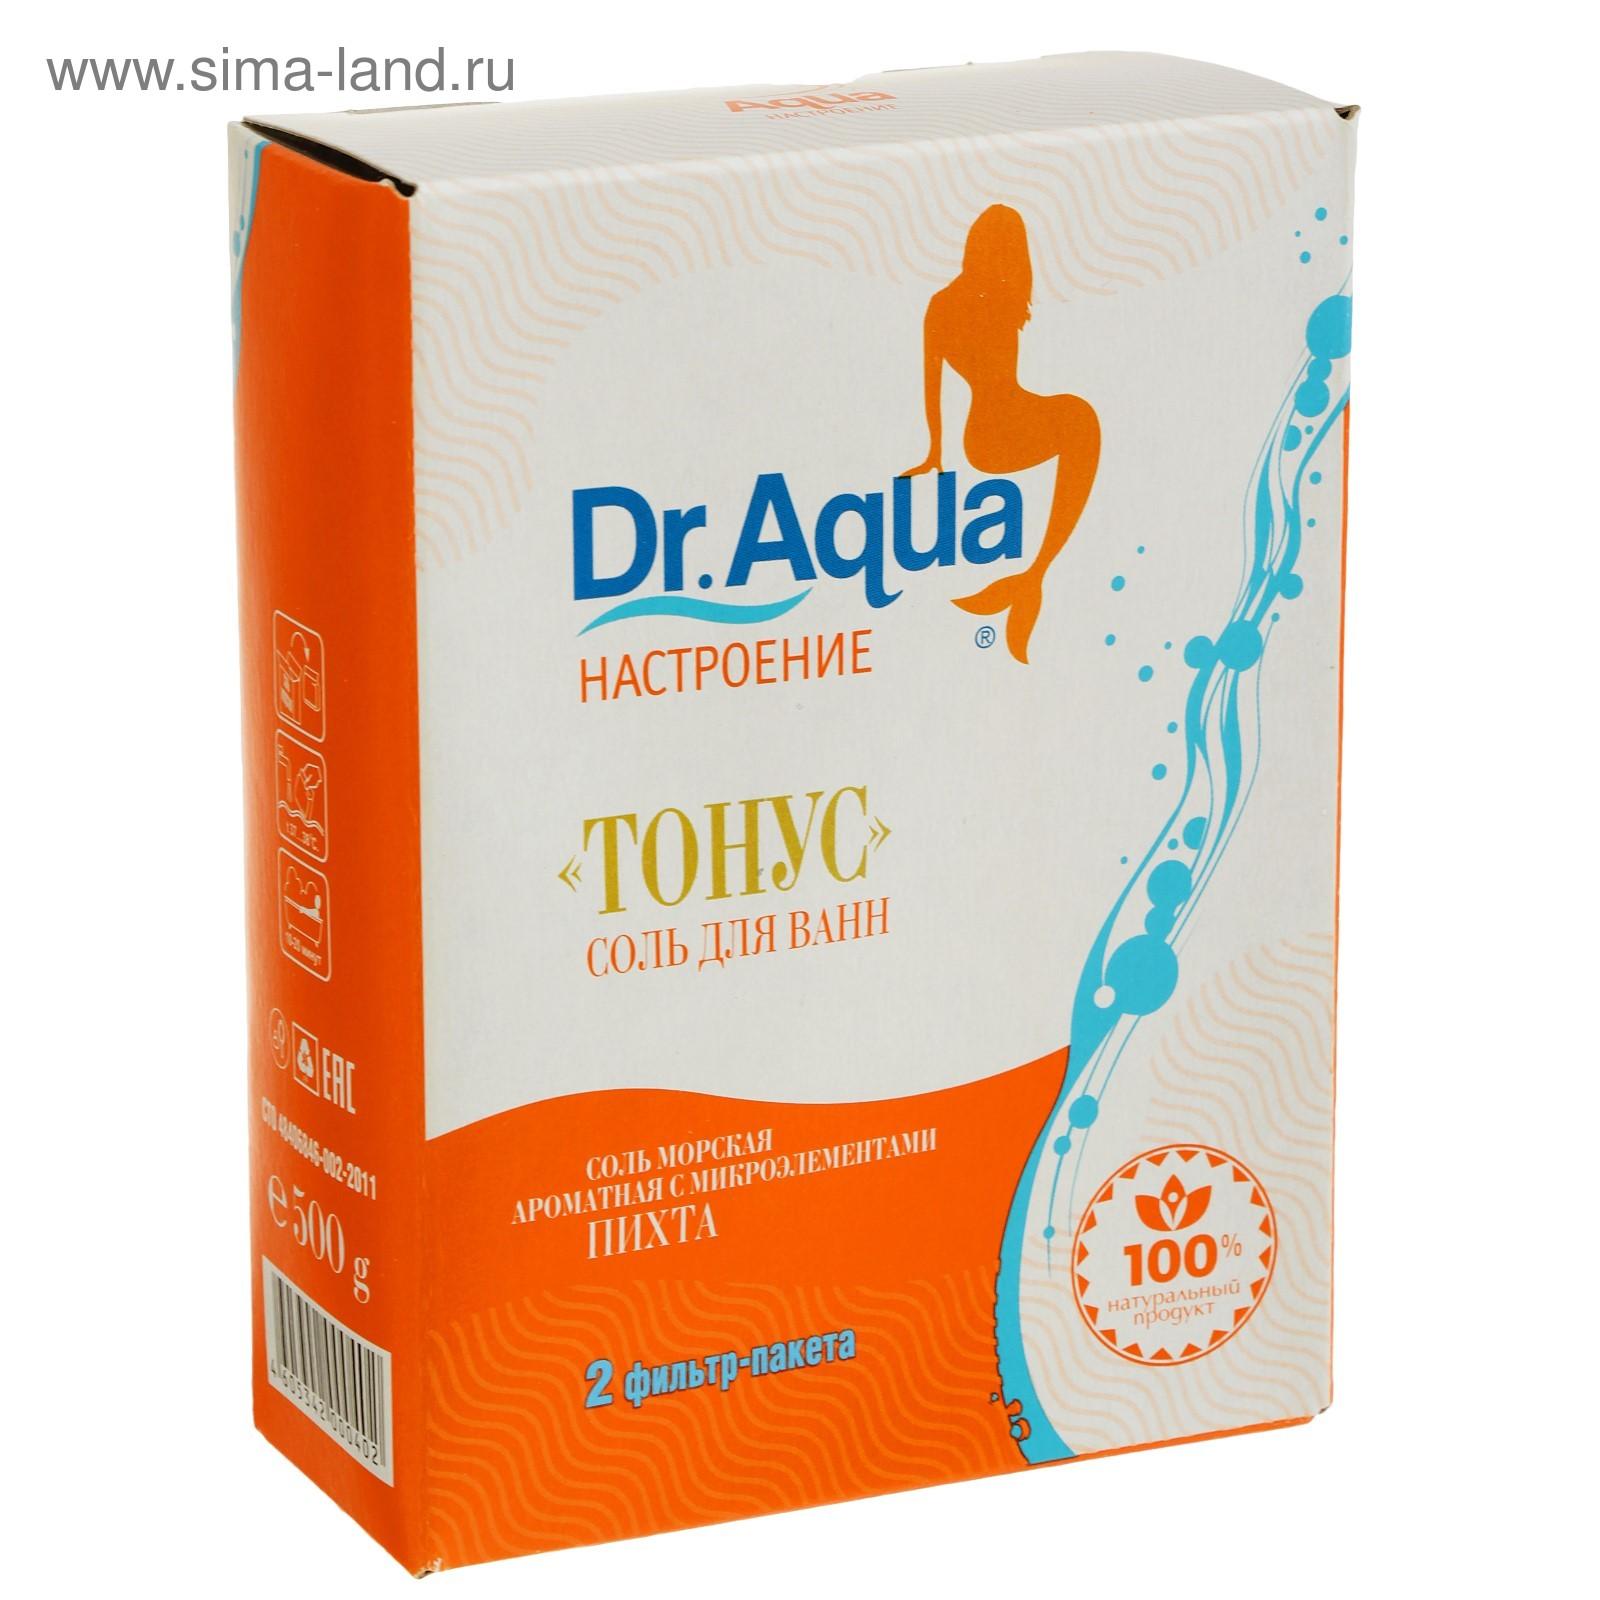 Соль морская Dr. Aqua ароматная Пихта «Тонус», 500 гр